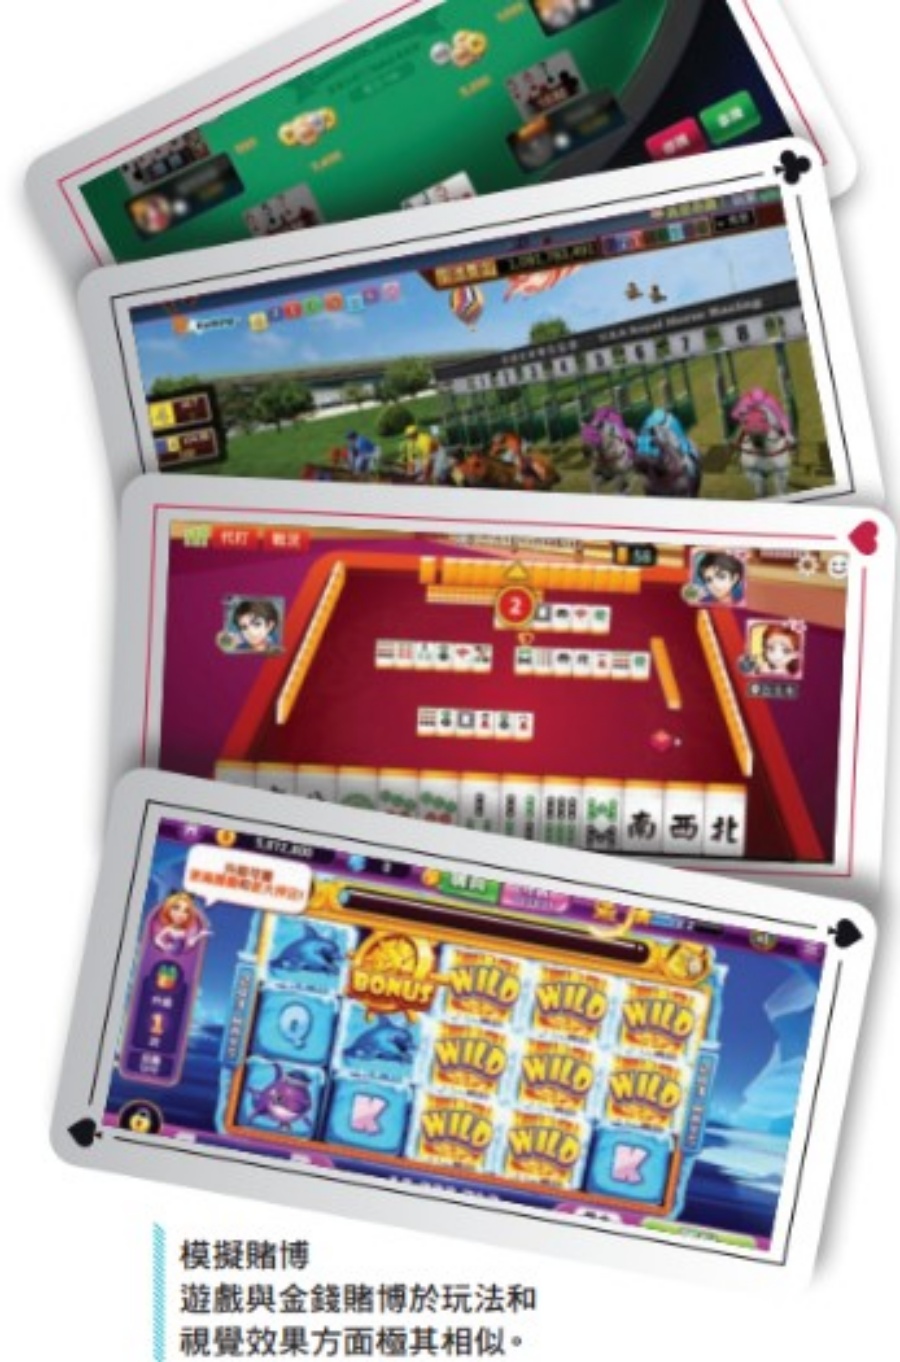 消委会测试6款手机模拟赌博游戏，发现全部游戏都未有验证玩家年龄。消委会